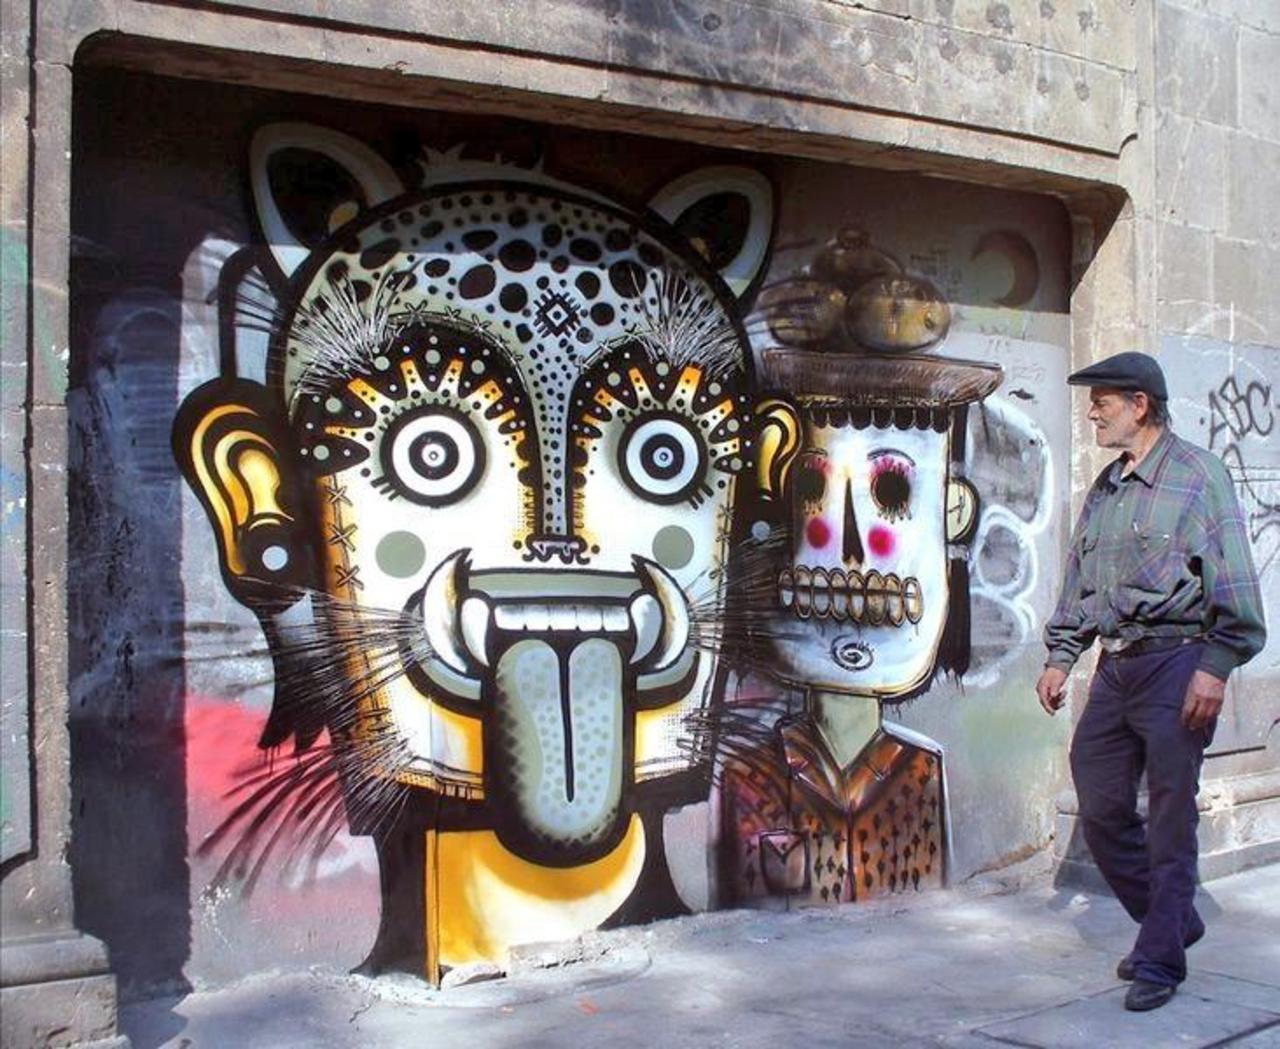 #RT "@loolek: @5putnik1 RT @Pitchuskita: Neuzz Mexico #streetart #art #graffiti #urbanart http://t.co/l4rCYLbVLD"